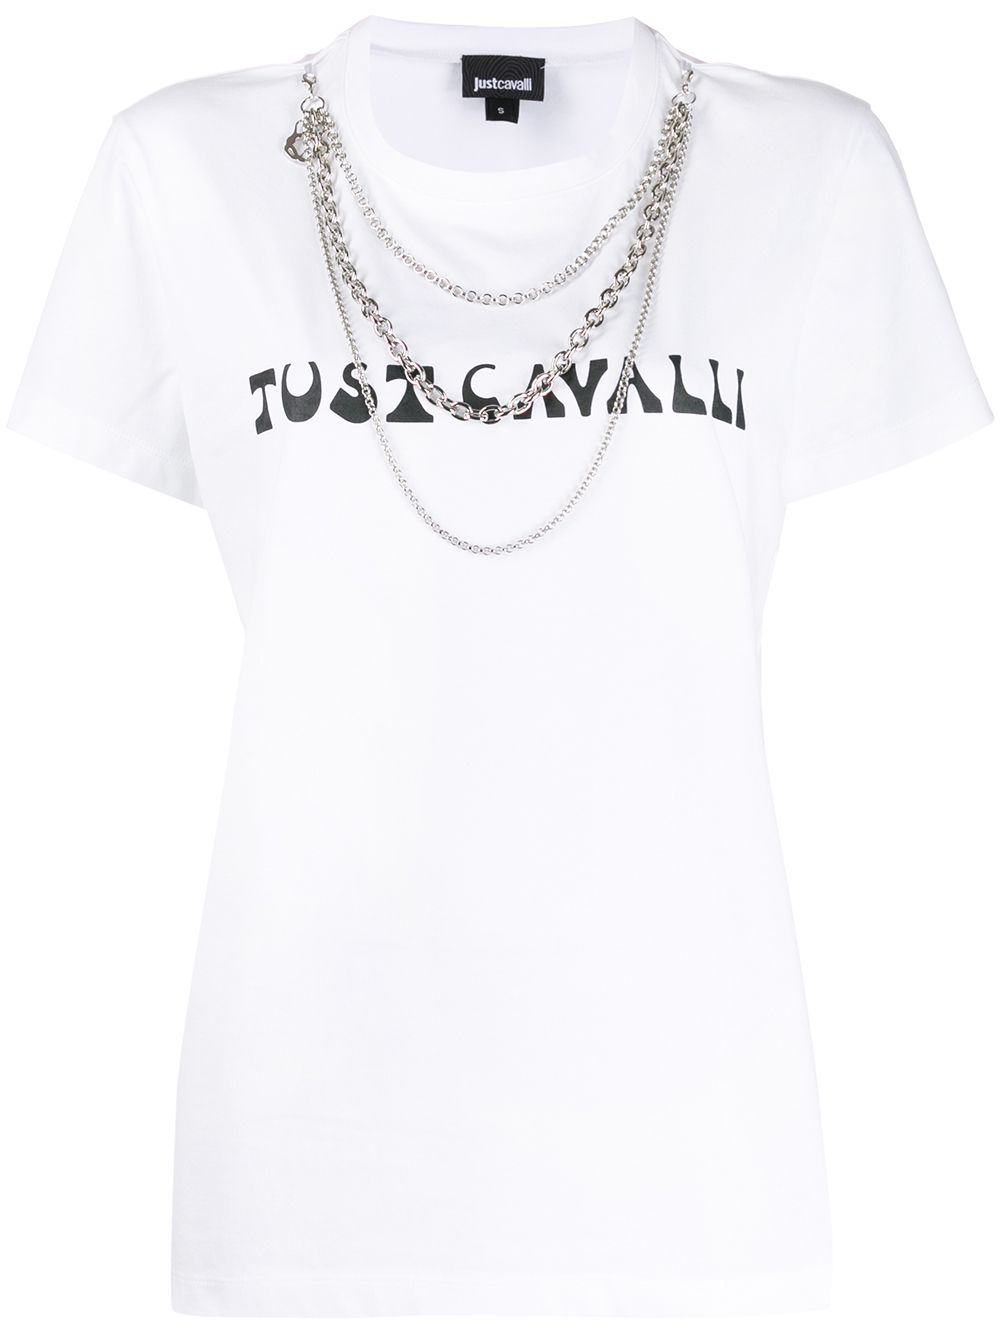 фото Just cavalli футболка с логотипом